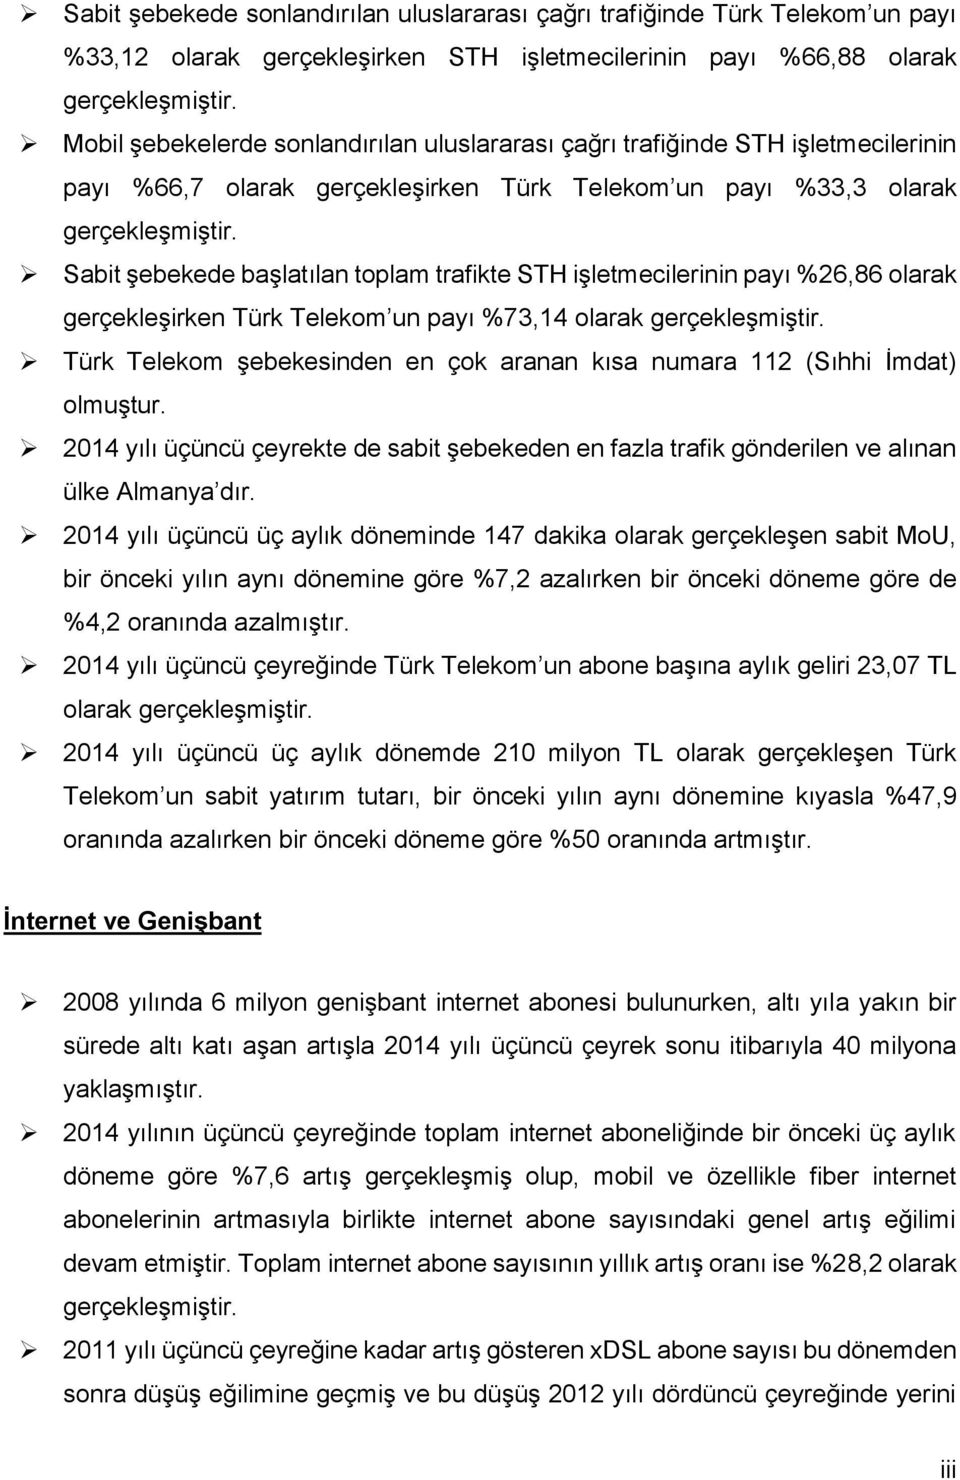 Sabit şebekede başlatılan toplam trafikte STH işletmecilerinin payı %26,86 olarak gerçekleşirken Türk Telekom un payı %73,14 olarak gerçekleşmiştir.